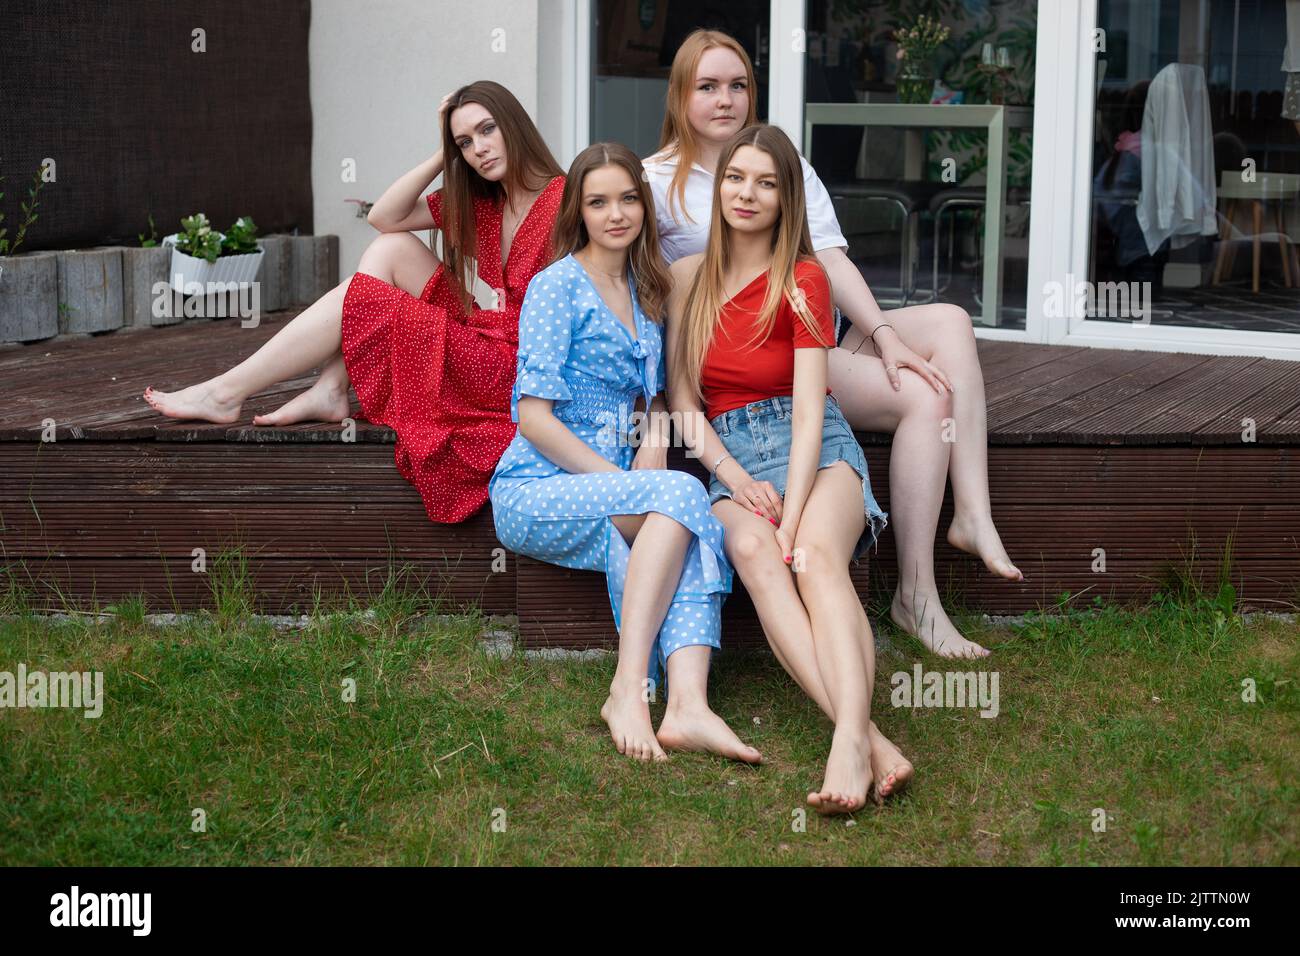 Gruppo di giovani donne a piedi nudi fiduciose e belle con lunghi capelli seduti su veranda di legno vicino all'erba verde, estate. Foto Stock